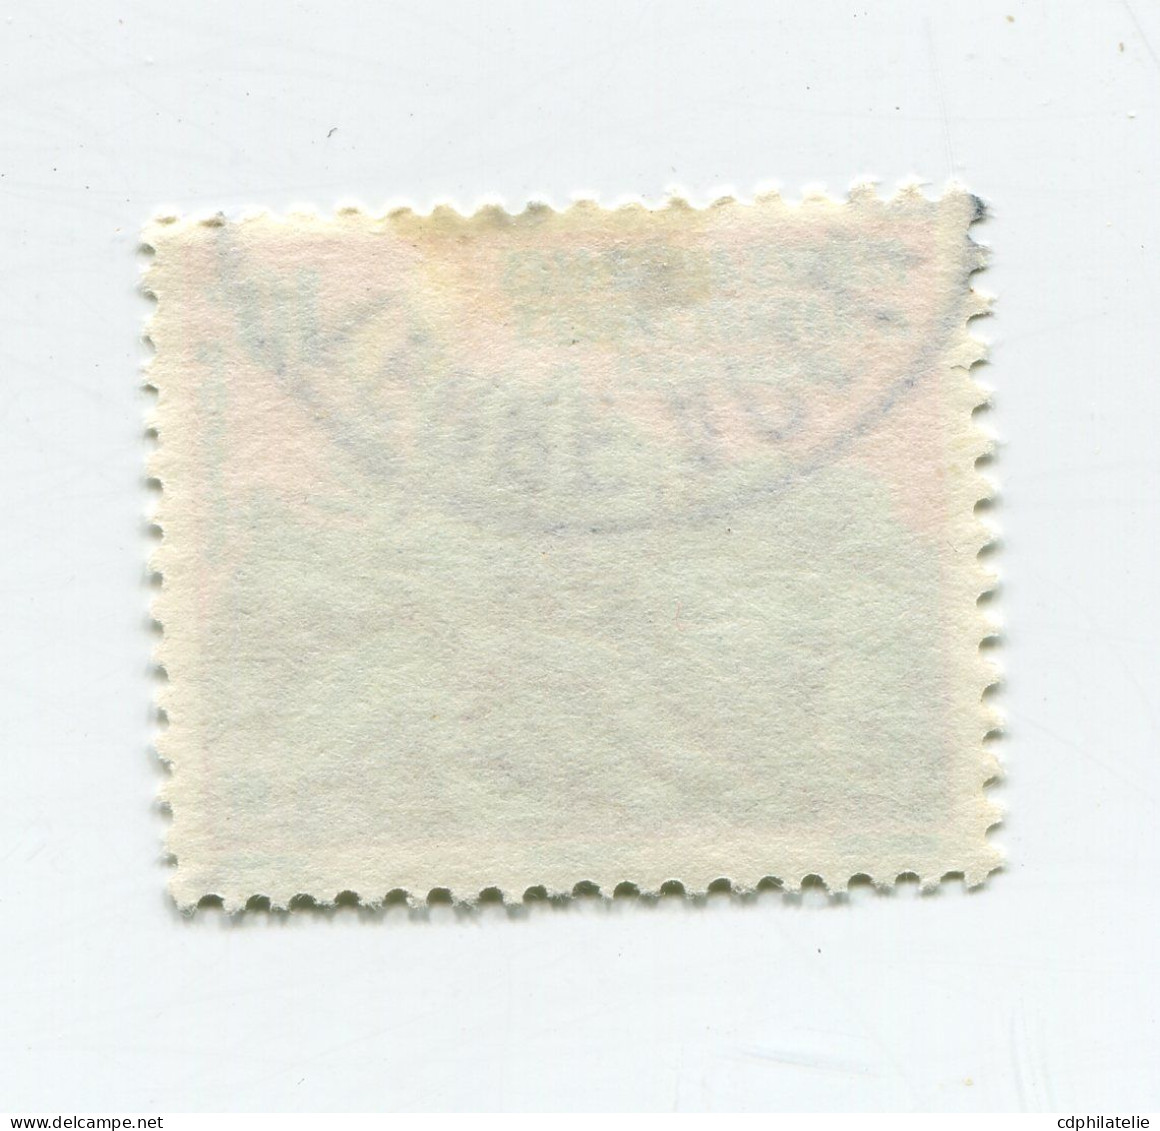 T. A.A. F. N°11 O CHOU DE KERGUELEN - Used Stamps